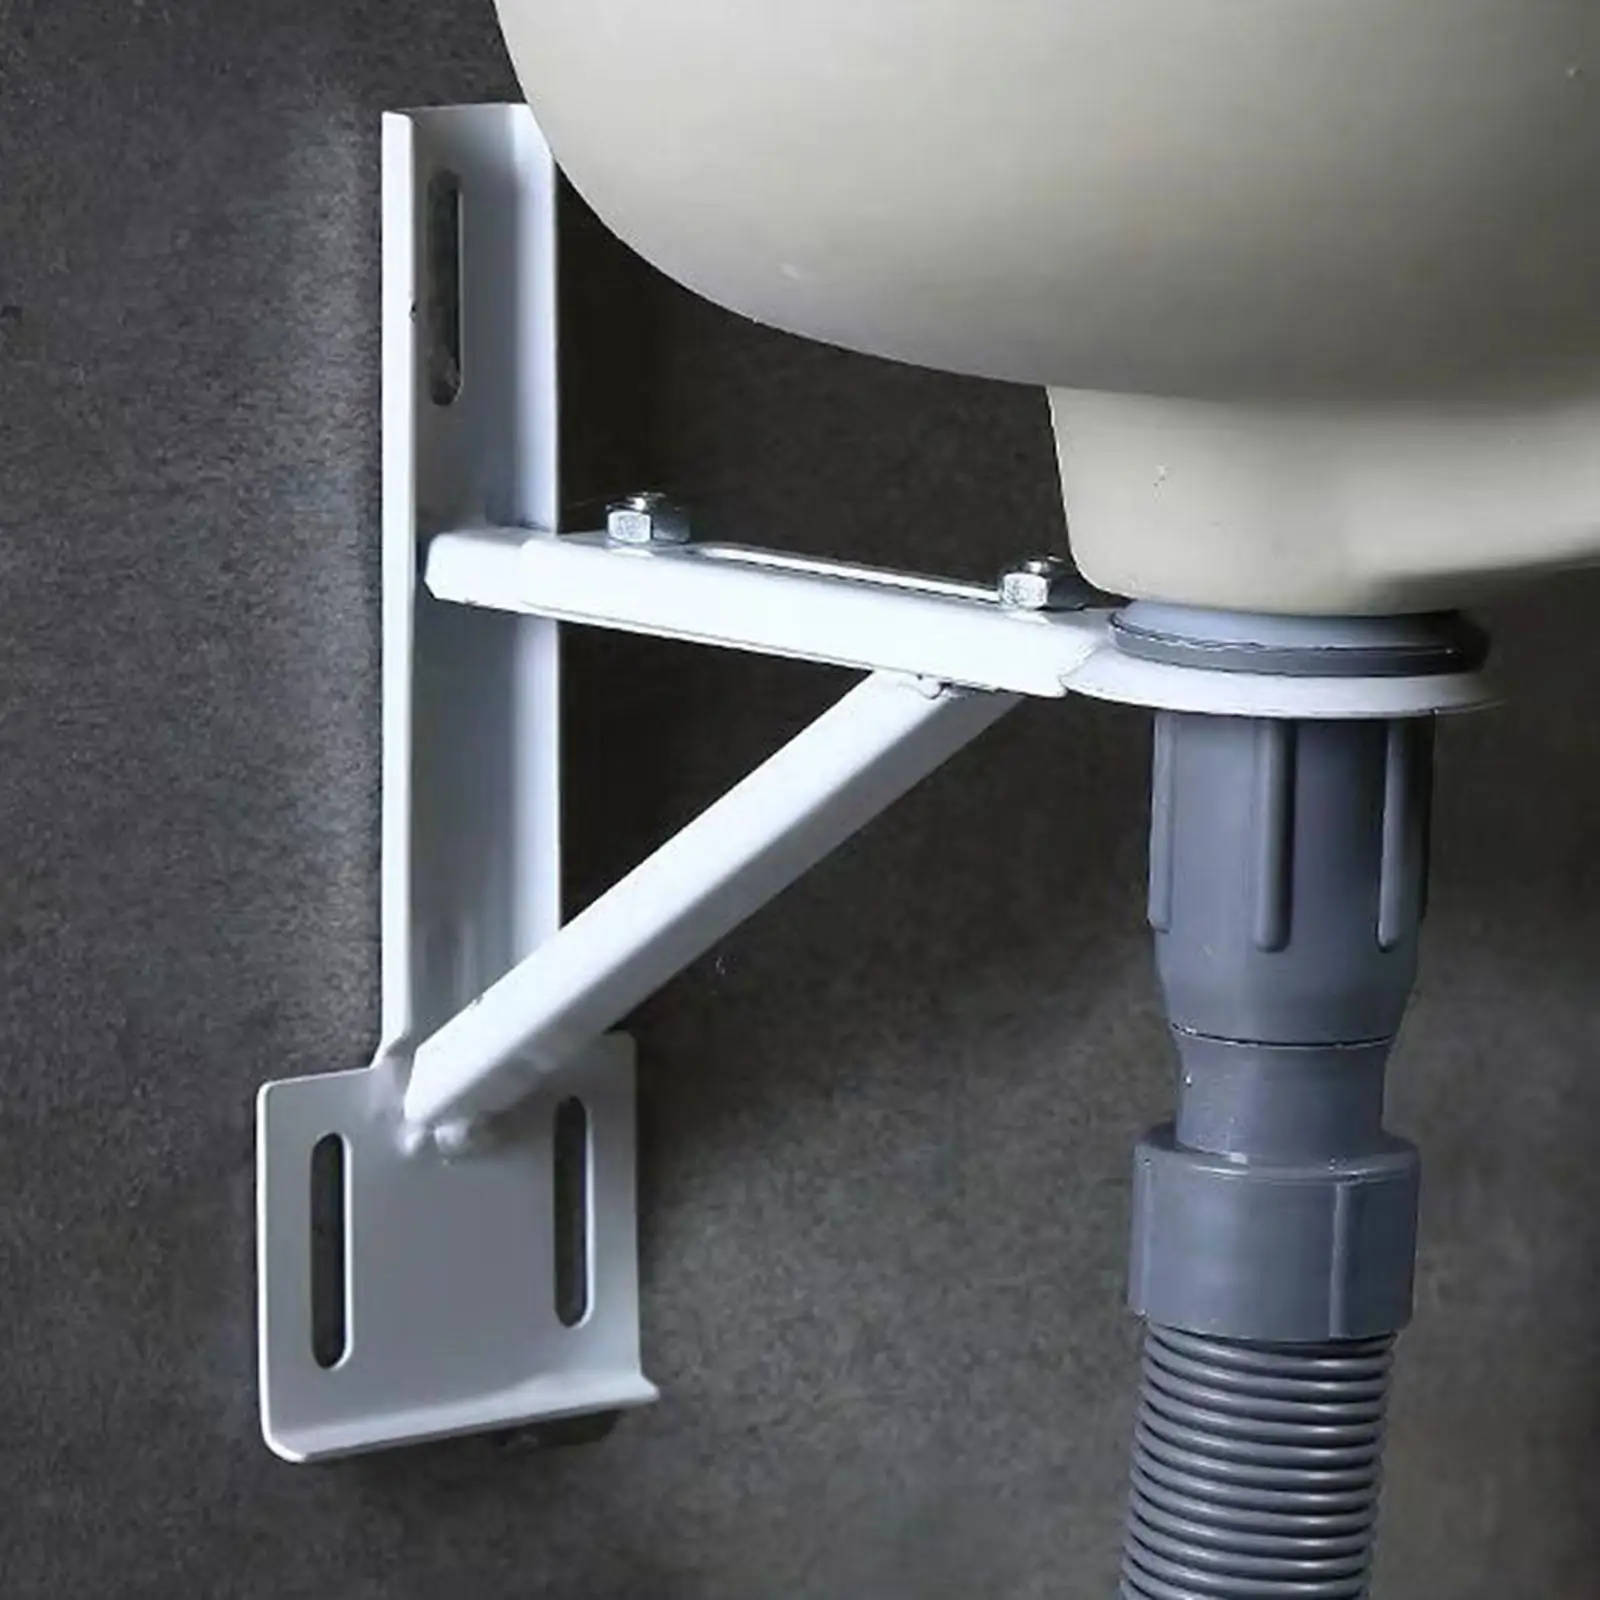 Undermount Sink Bracket Undermount Sink Installation Heavy Duty Tripod Adjustable Triangle Bracket Support for Kitchen Bathroom